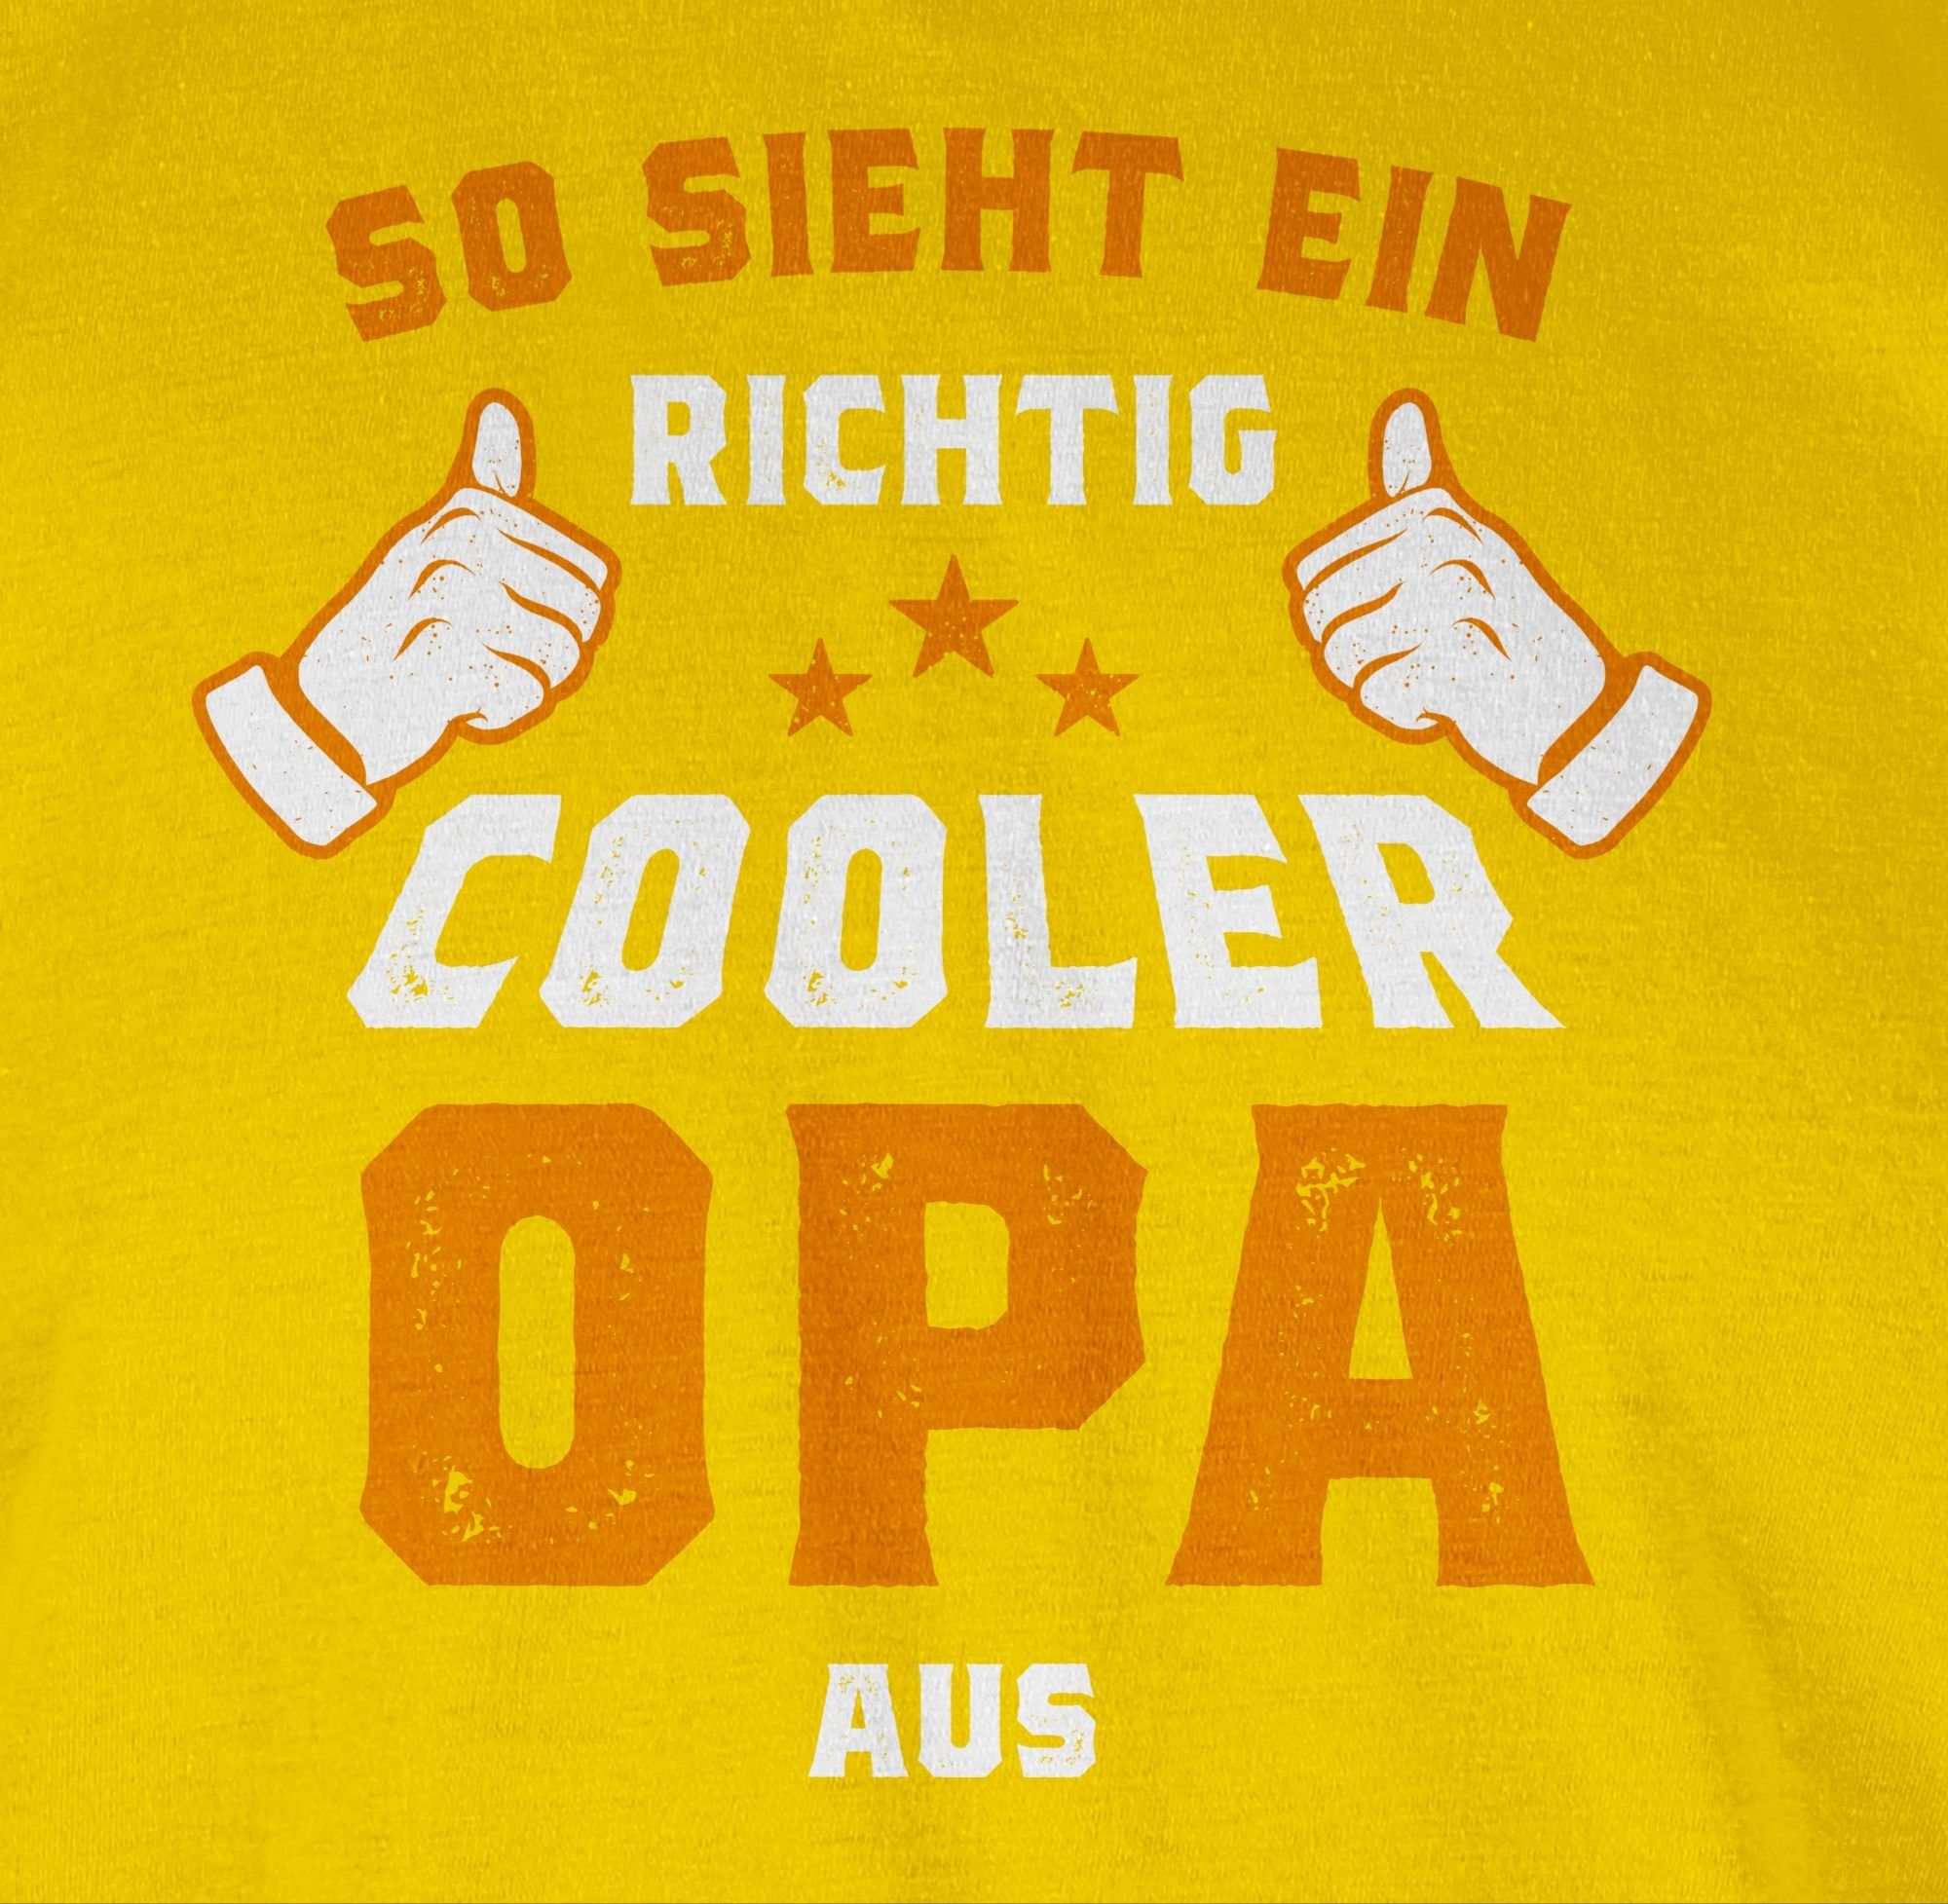 Opa So T-Shirt richtig ein Shirtracer sieht Gelb Geschenke 3 Opa Orange cooler aus